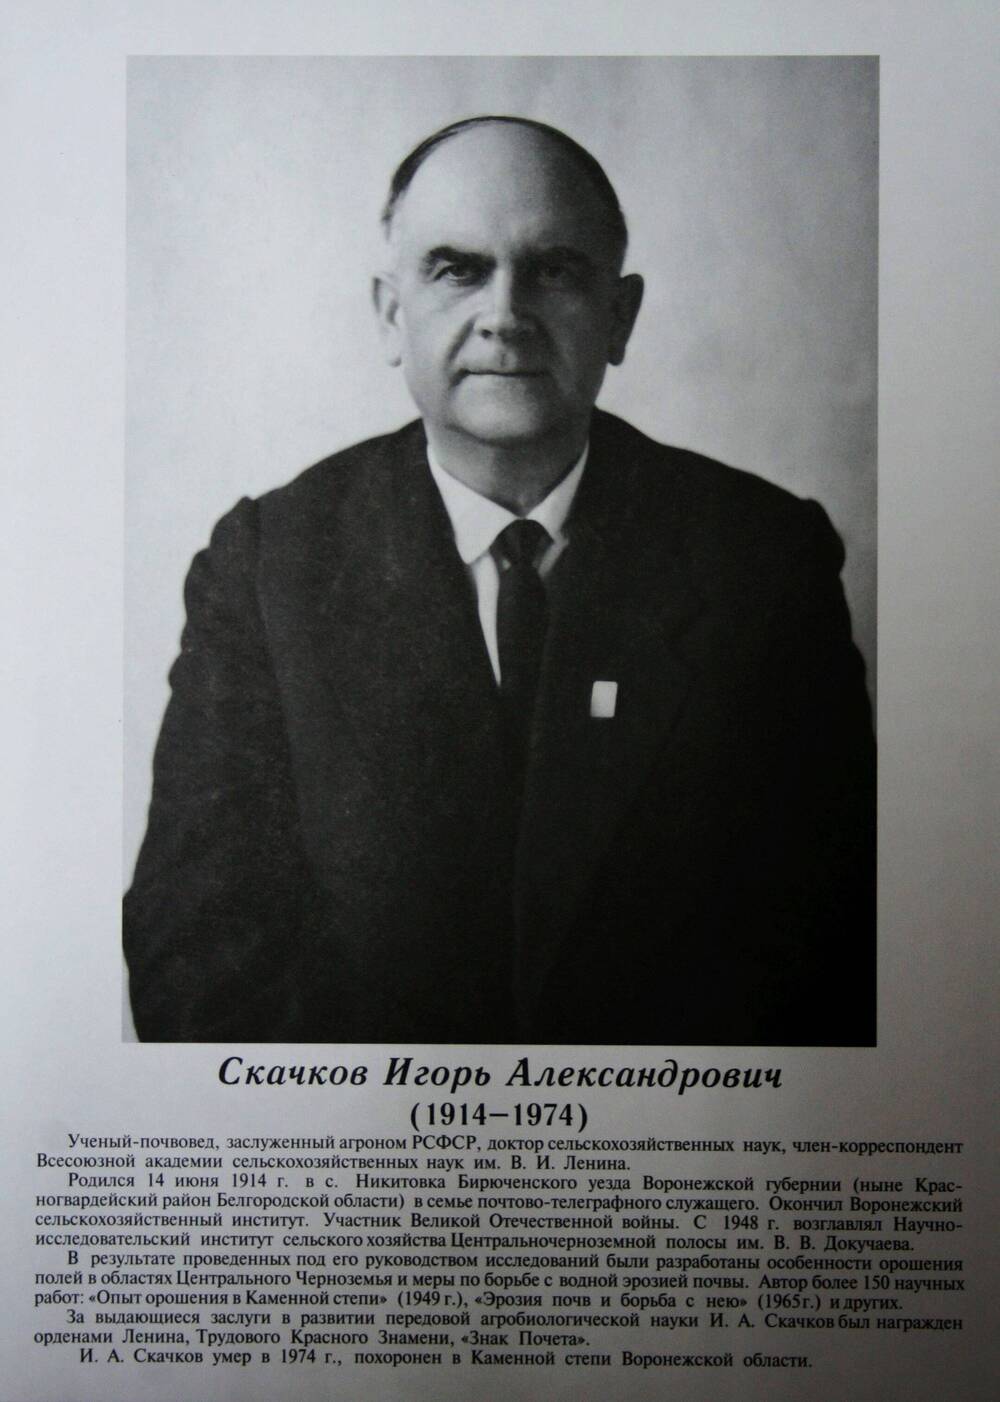 Плакат (фотопортрет) из комплекта Галерея славных имен Белгородчины. Скачков Игорь Александрович (1914-1974).